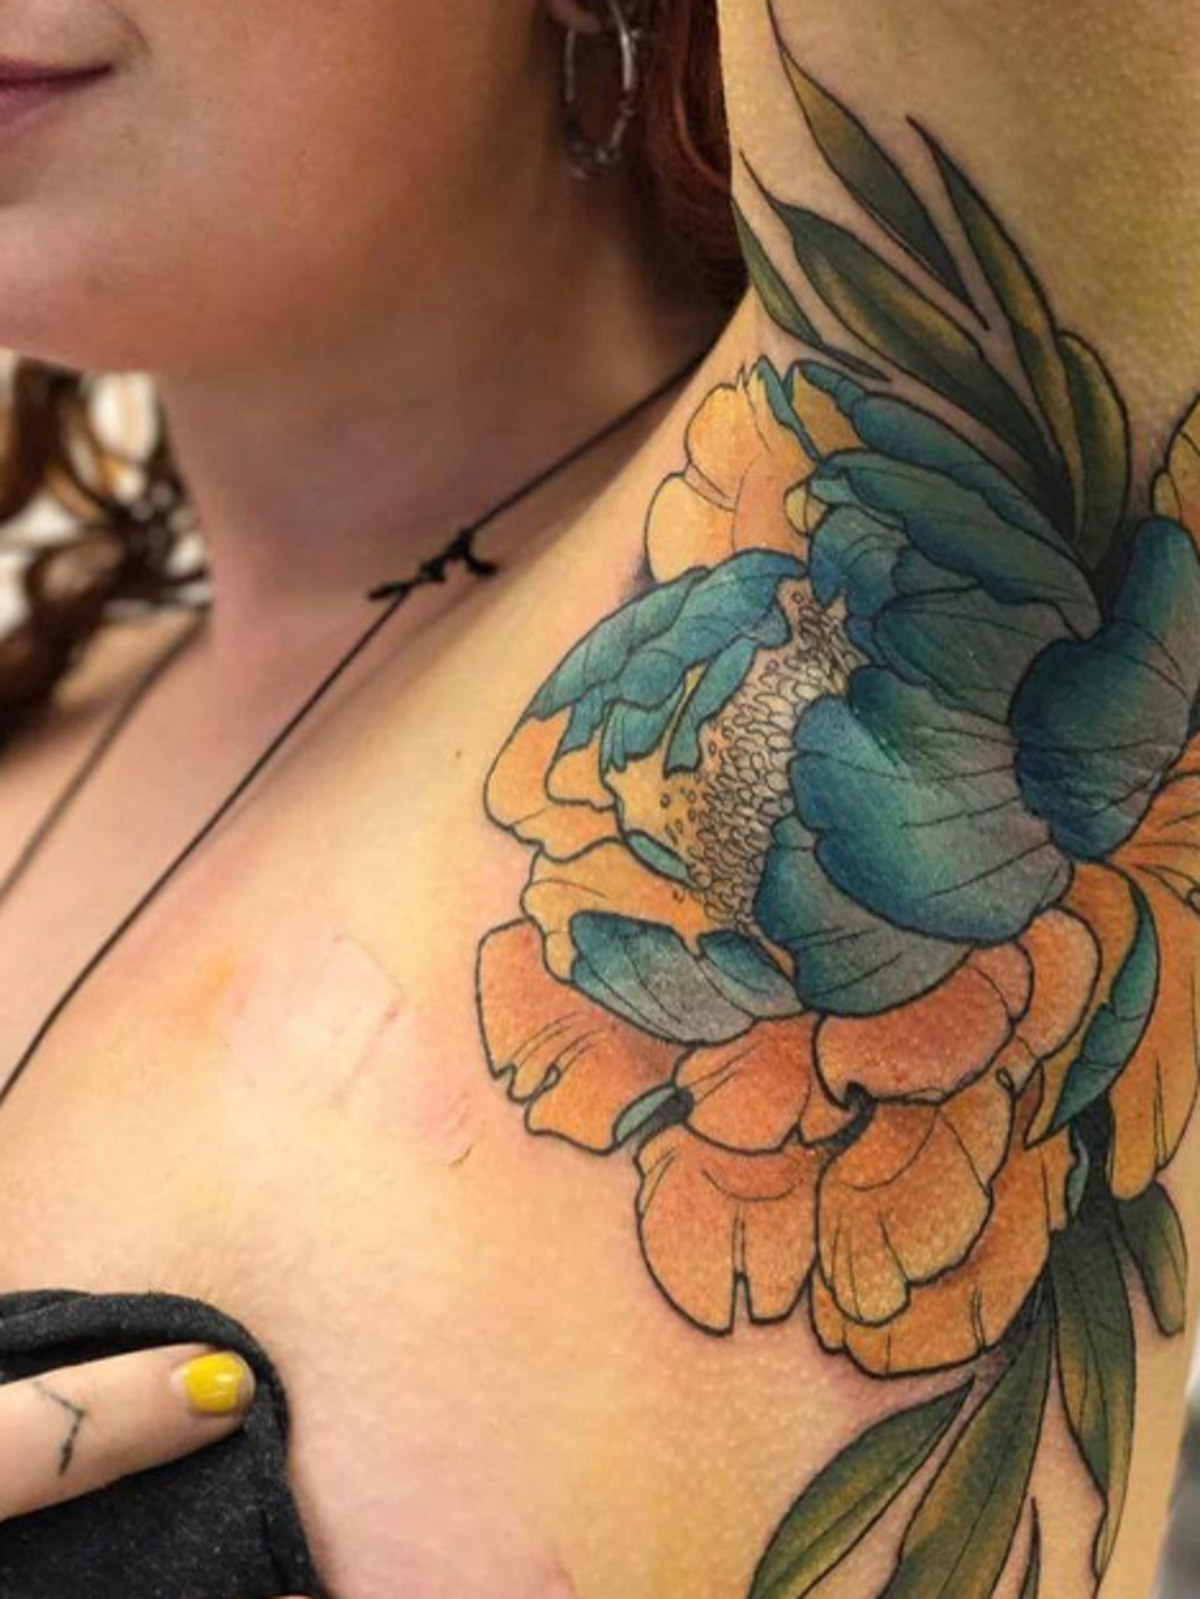 Tatuaże pod pachami - nowy trend z Instagrama